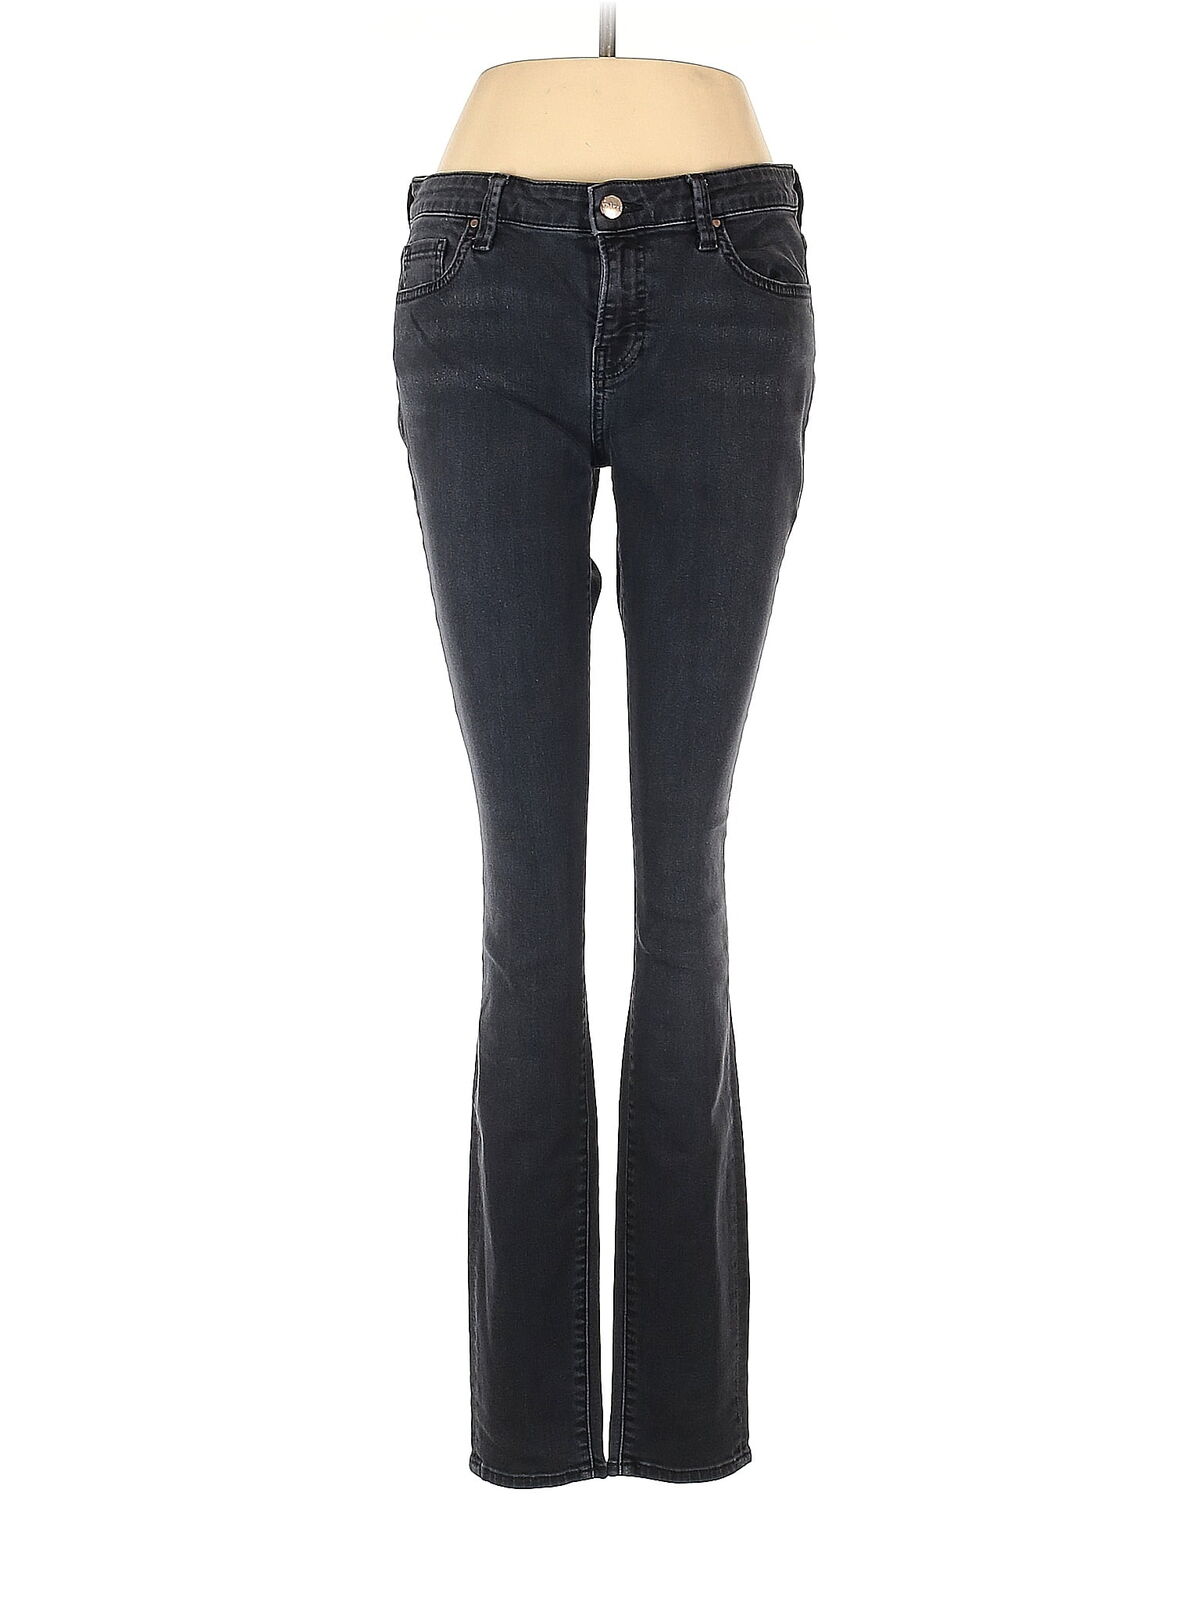 Velvet Women Black Jeans 29W - image 1